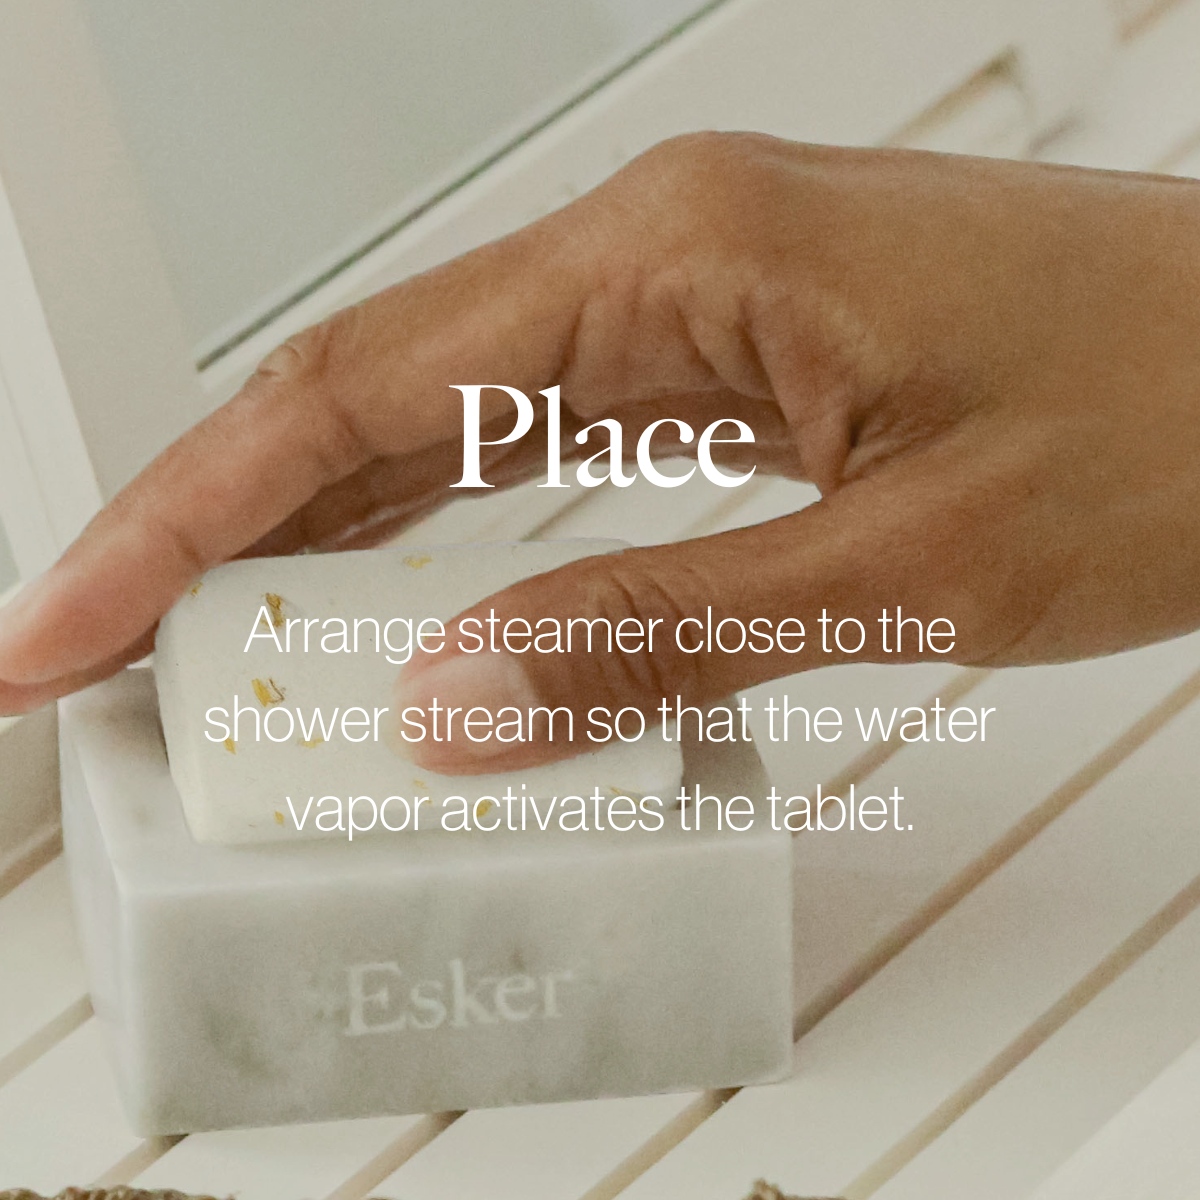 ESKER Aromatic Shower Steamer Set - 1 MARBLE HOLDER & 4 SHOWER